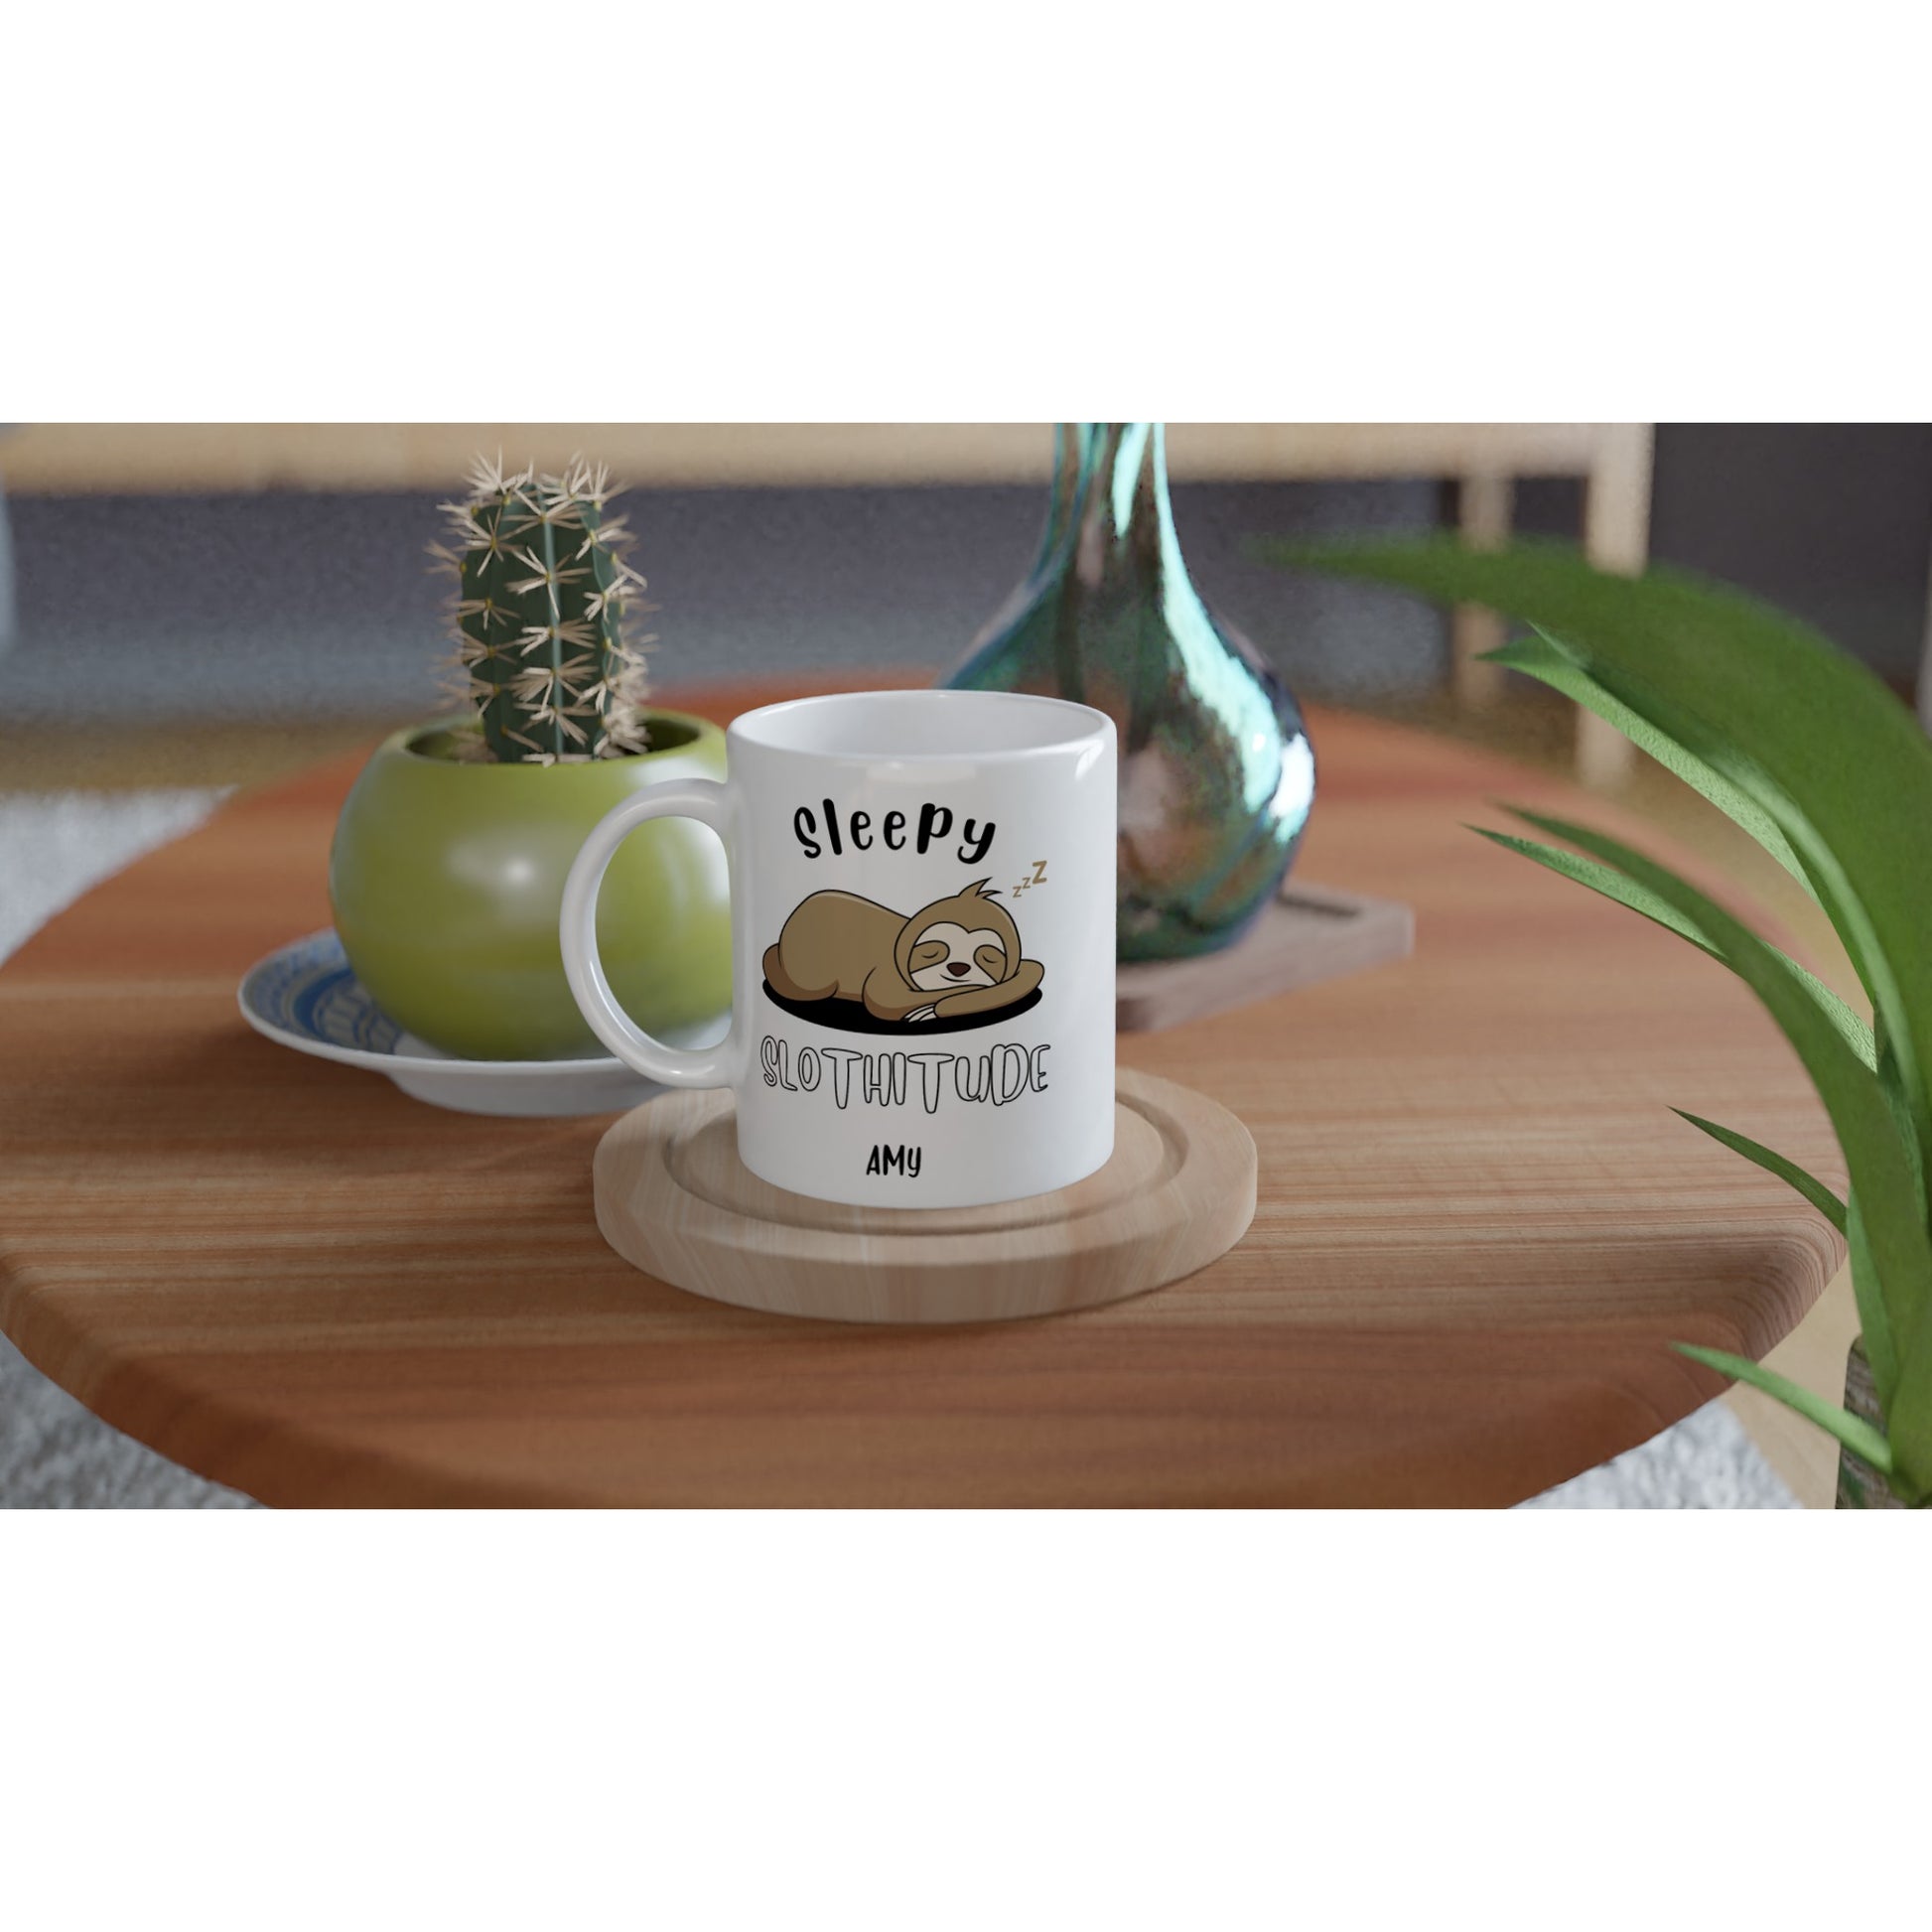 Personalise - Sloth, Sleepy Slothitude - White 11oz Ceramic Mug Personalised Mug animal customise personalise